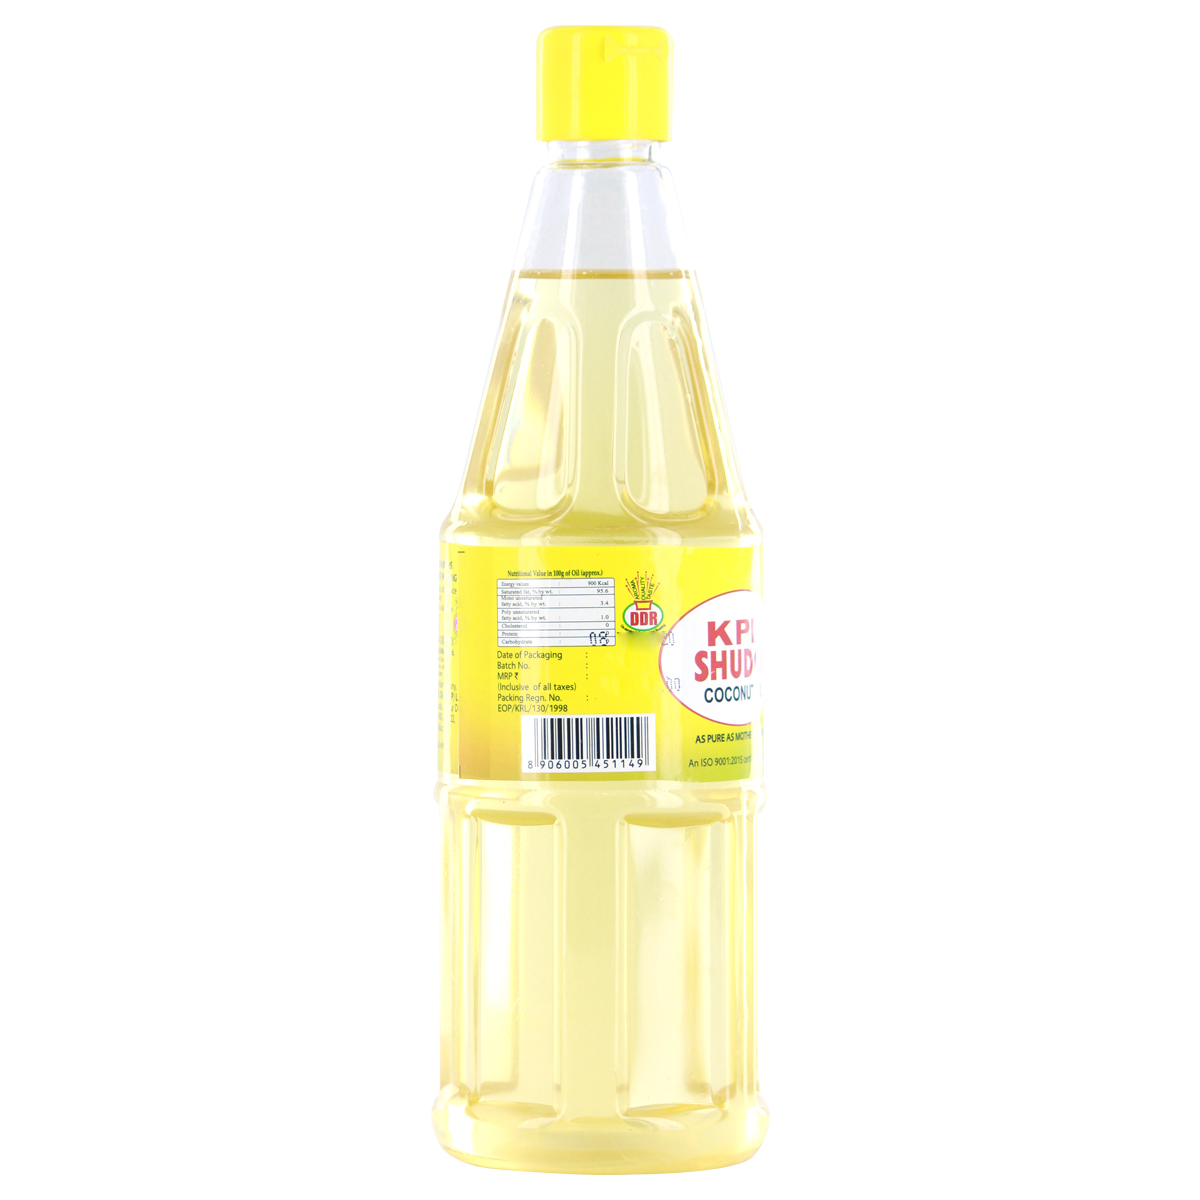 KPL Shudhi Coconut Oil Pet Bottle 500ml